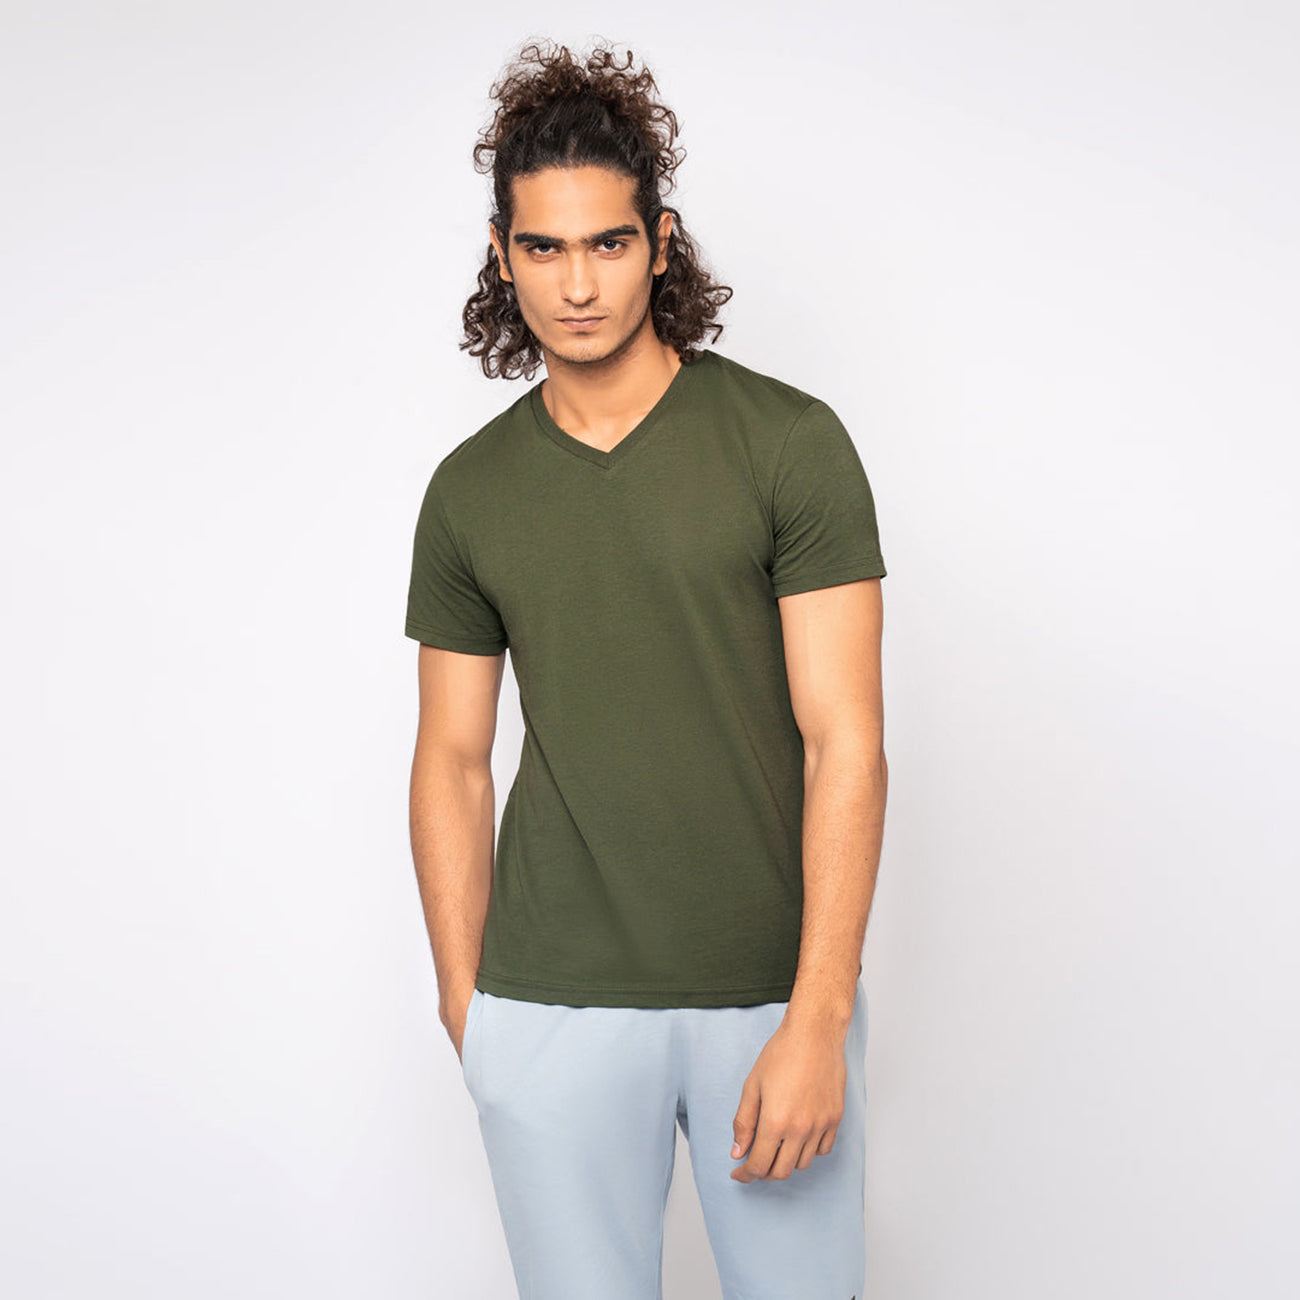 Olive V-Neck Soft Cotton T-Shirt For Men (10587)